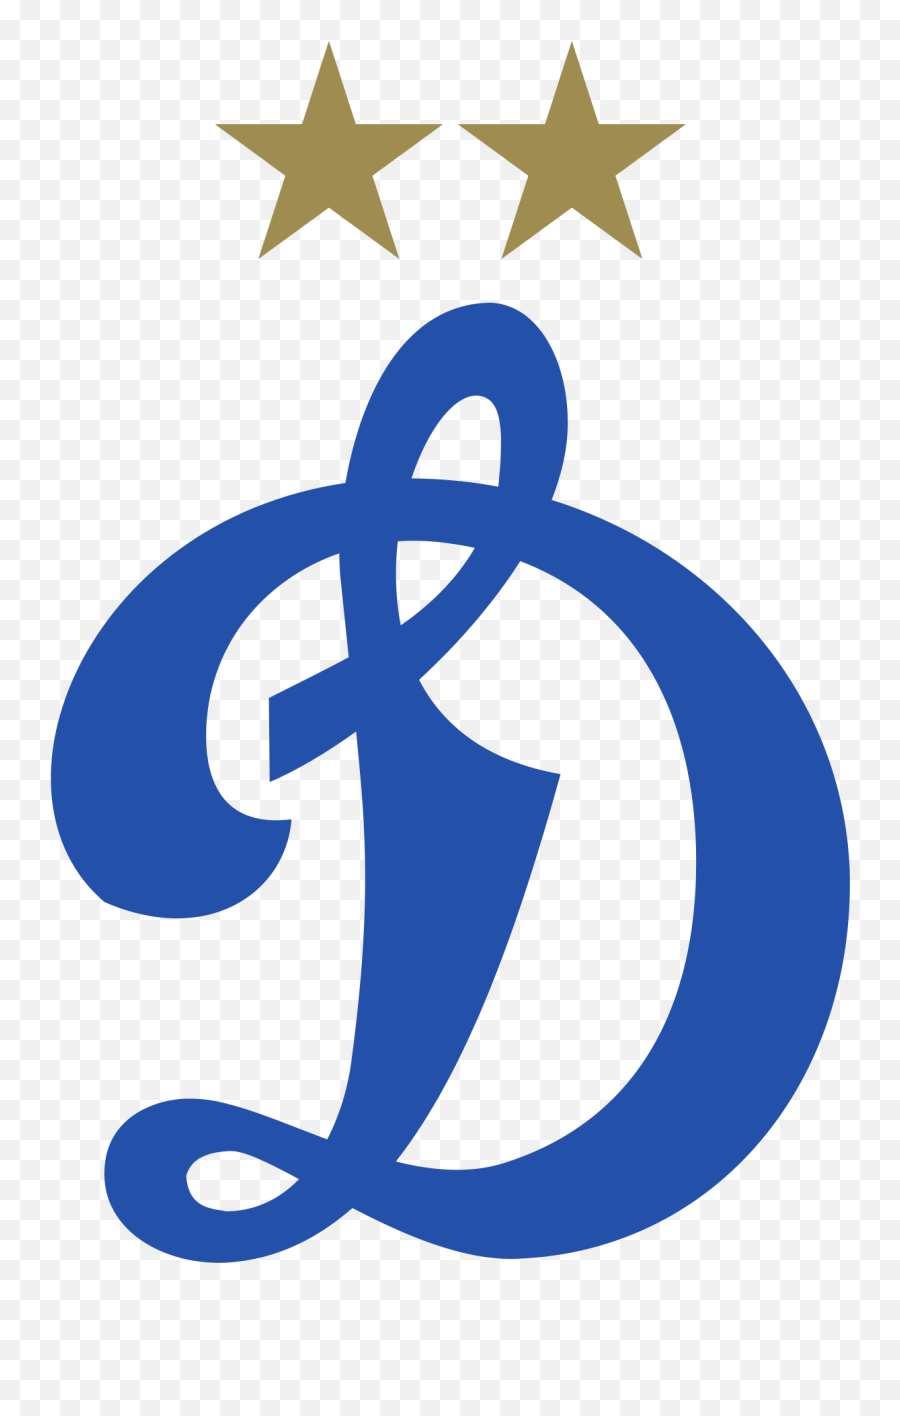 Houston Dynamo Mls U0026 Houston Dash Nwsl Rebranding - Dynamo Moscow Logo Png Emoji,Guess The Emoji Club Tablet